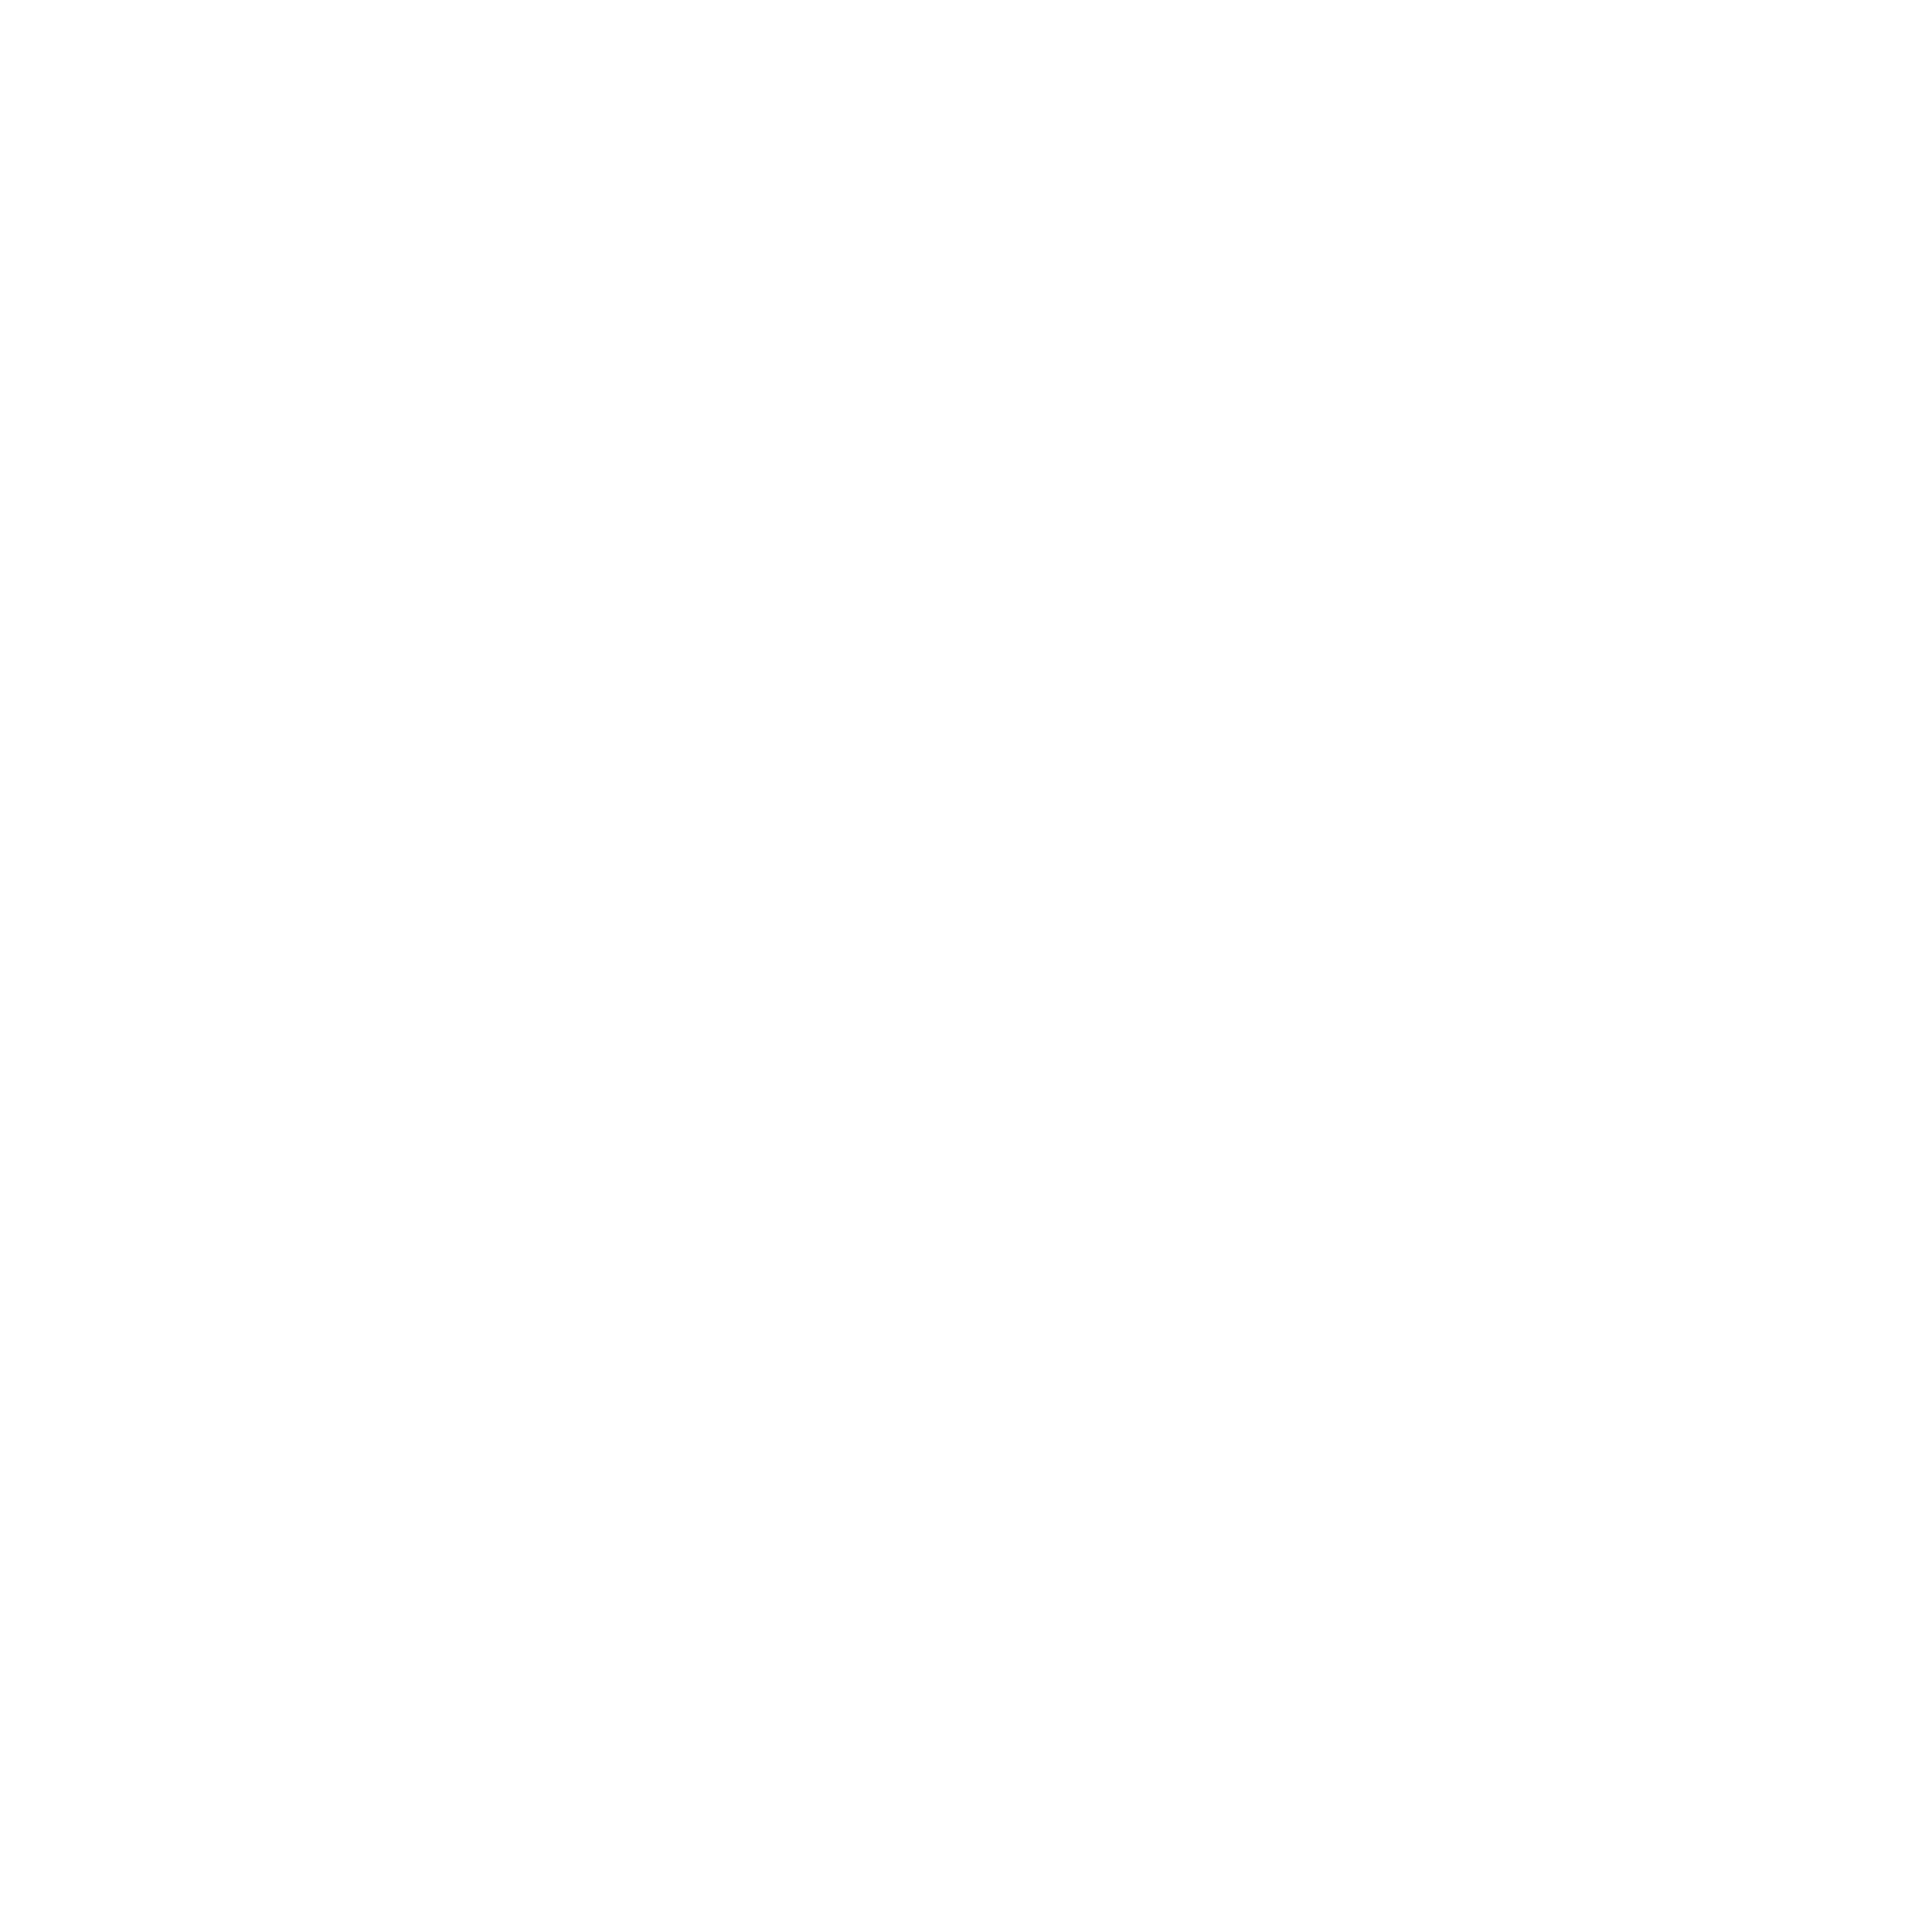 Vinkill skraut svartur 193×240